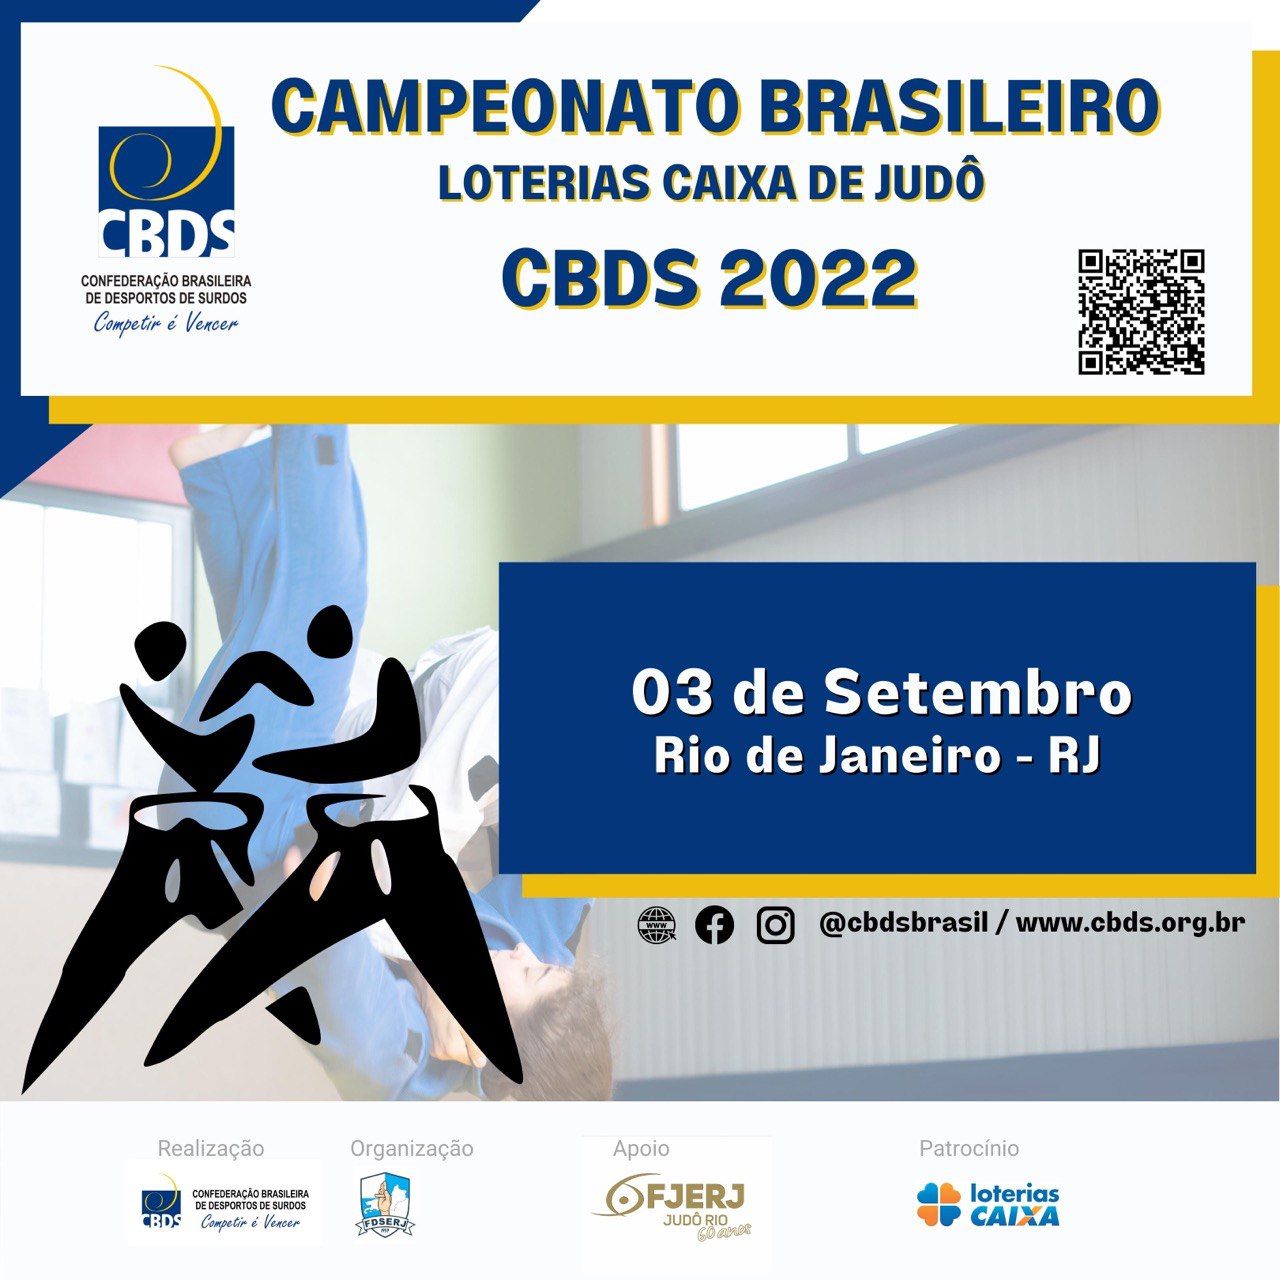 Campeonato Brasileiro Loterias Caixa de Judô 2022